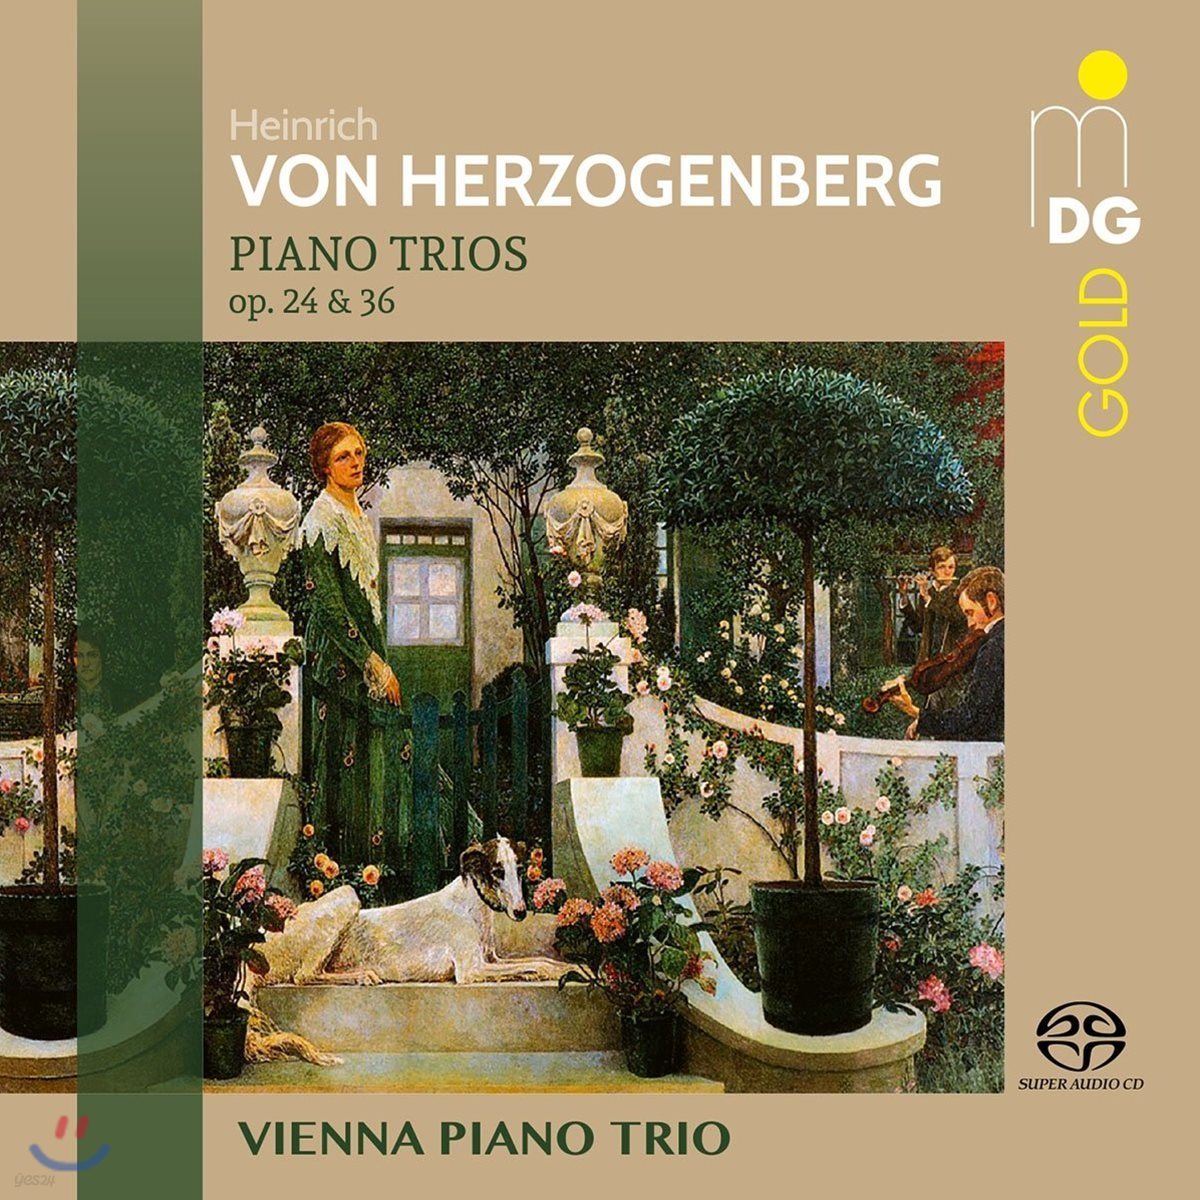 Vienna Piano Trio 헤르초겐베르크: 피아노 삼중주 1, 2번 - 비엔나 피아노 트리오 (Heinrich von Herzogenberg: Piano Trios Op.24 & Op.36)